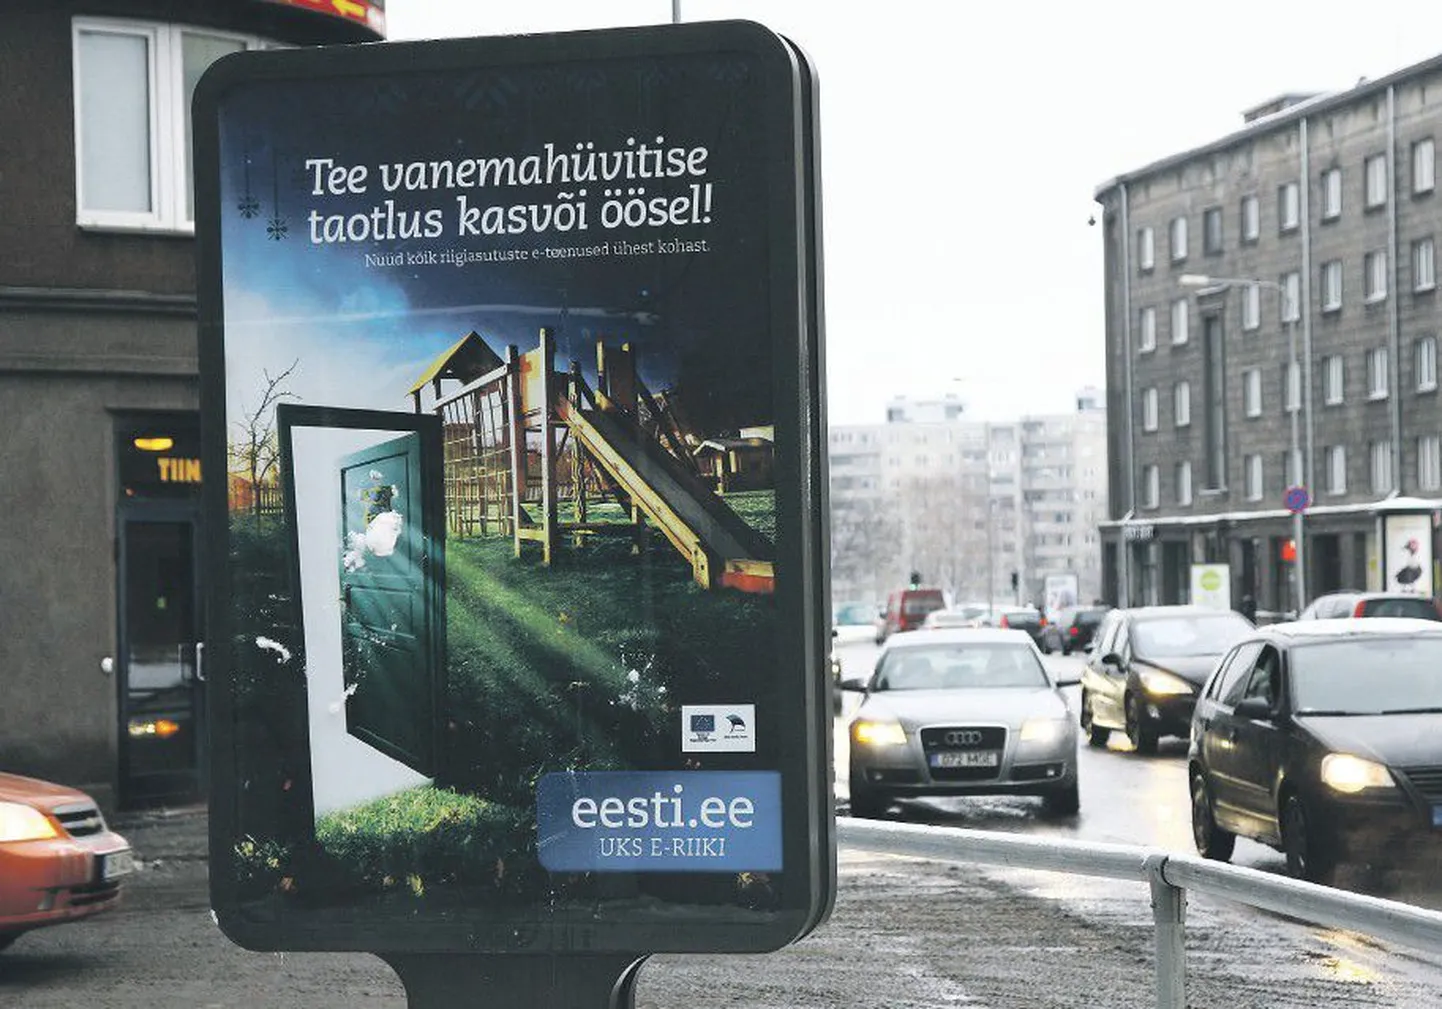 Единый портал eesti.ee был создан на деньги Евросоюза с тем, чтобы жители страны могли напрямую контактировать с государственными структурами.